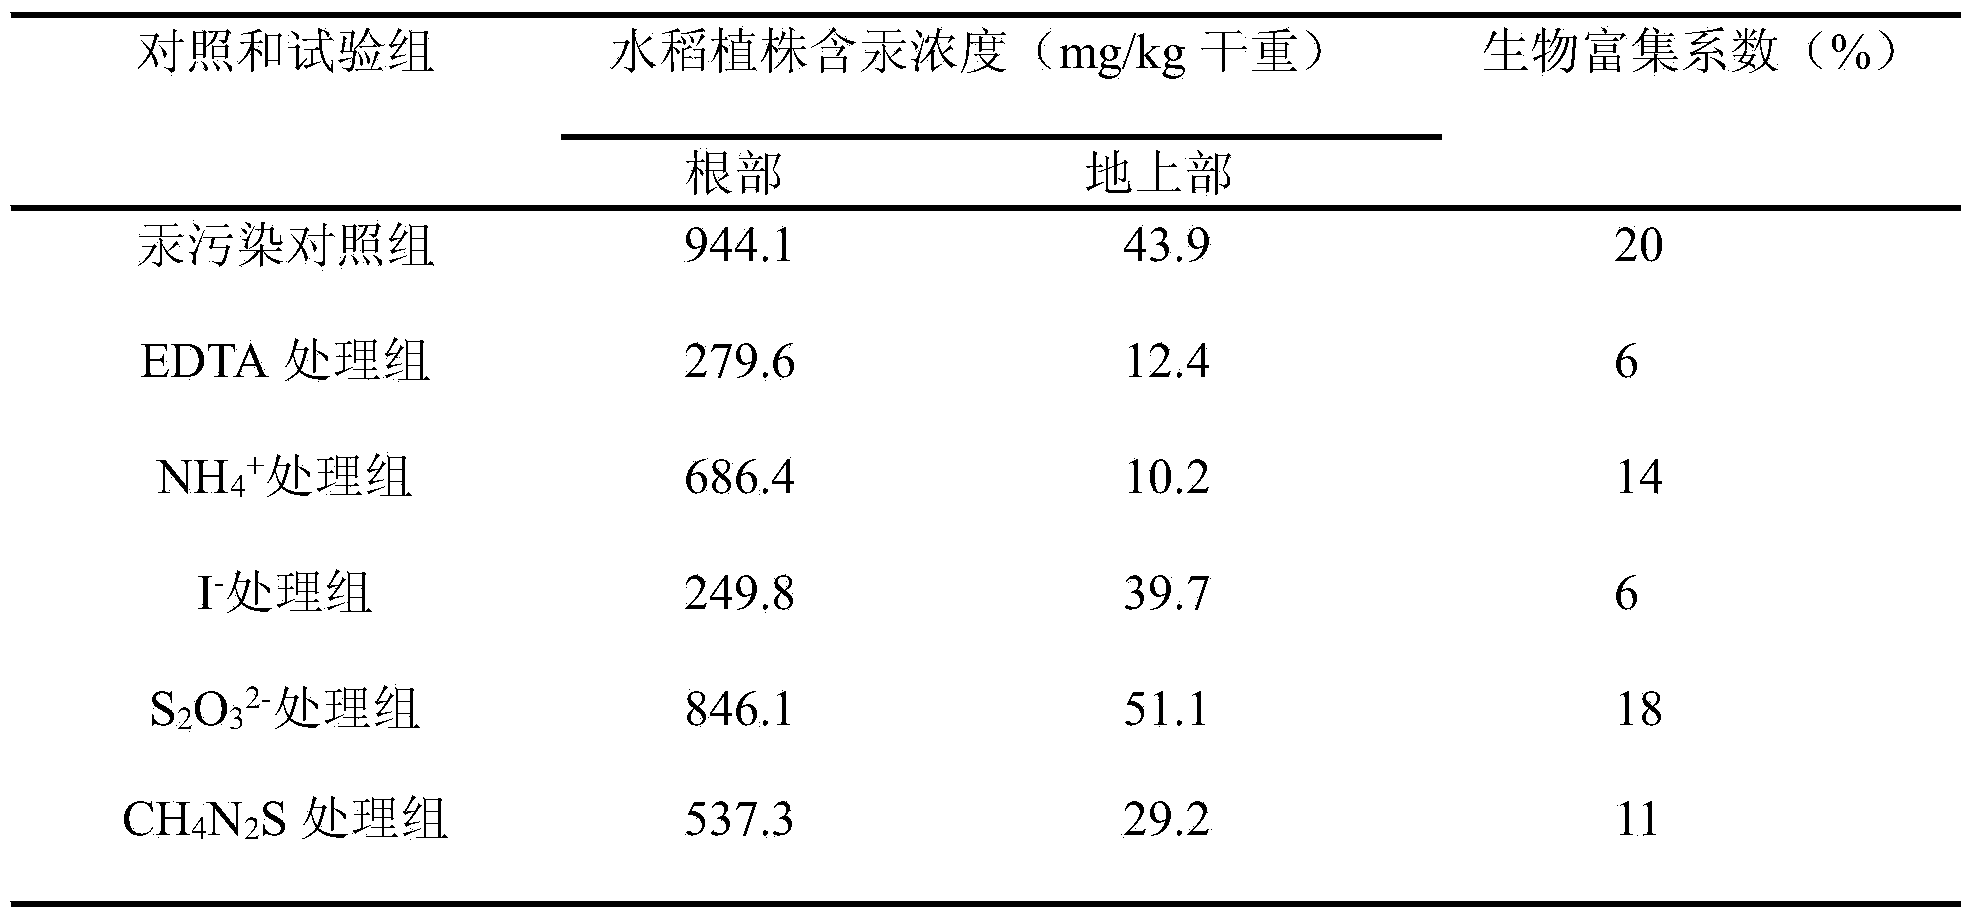 Method for reducing mercury content in rice